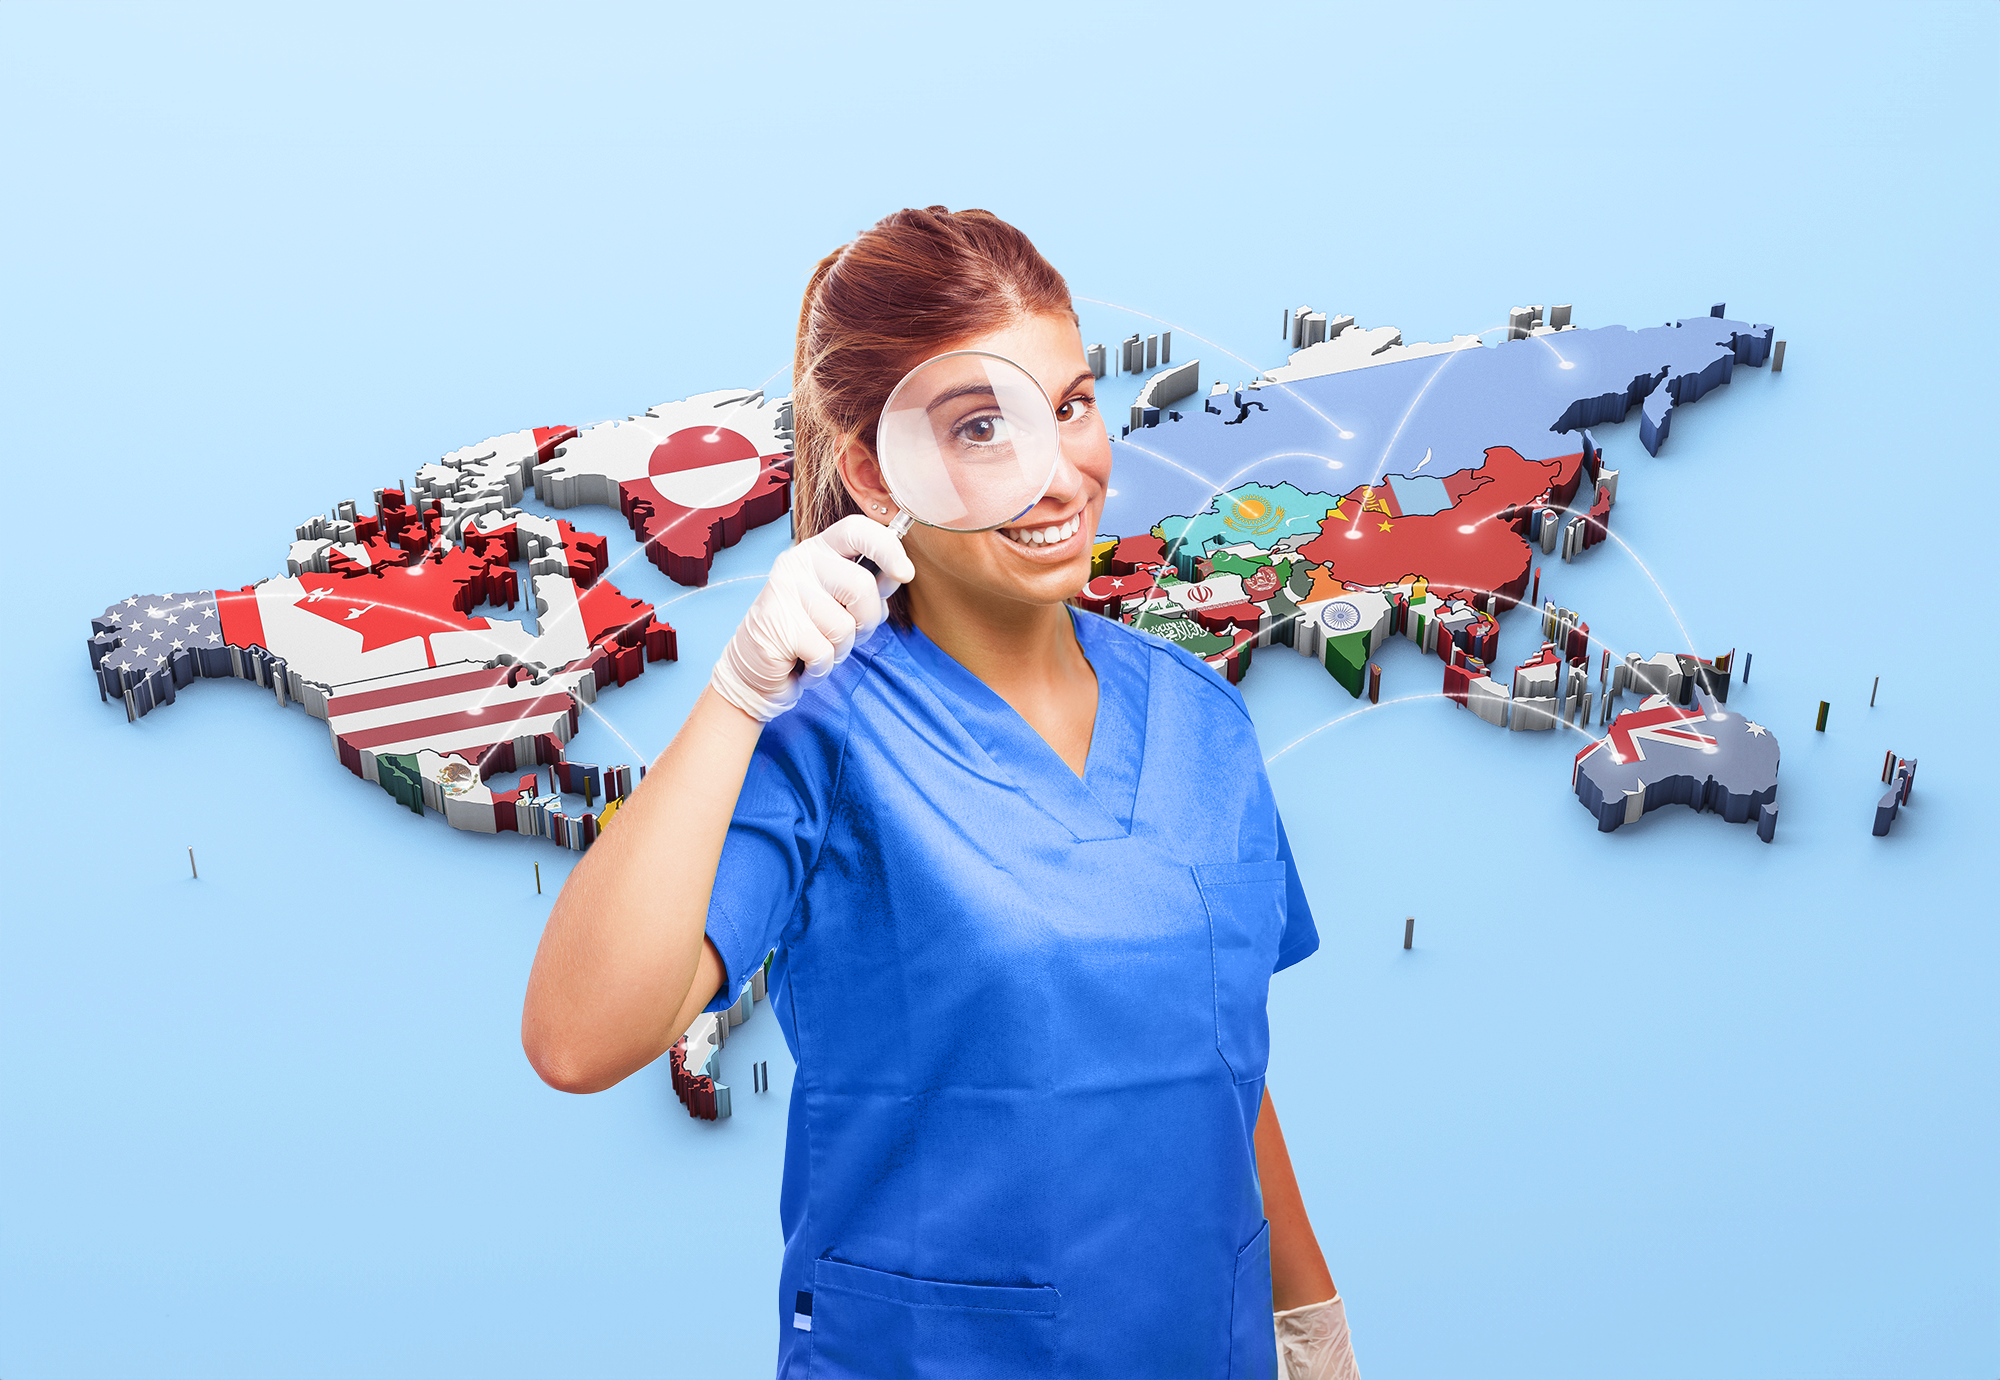 Illustracja do wpisu: Praca pielęgniarki na świecie – gdzie szukać nowych możliwości zawodowych?